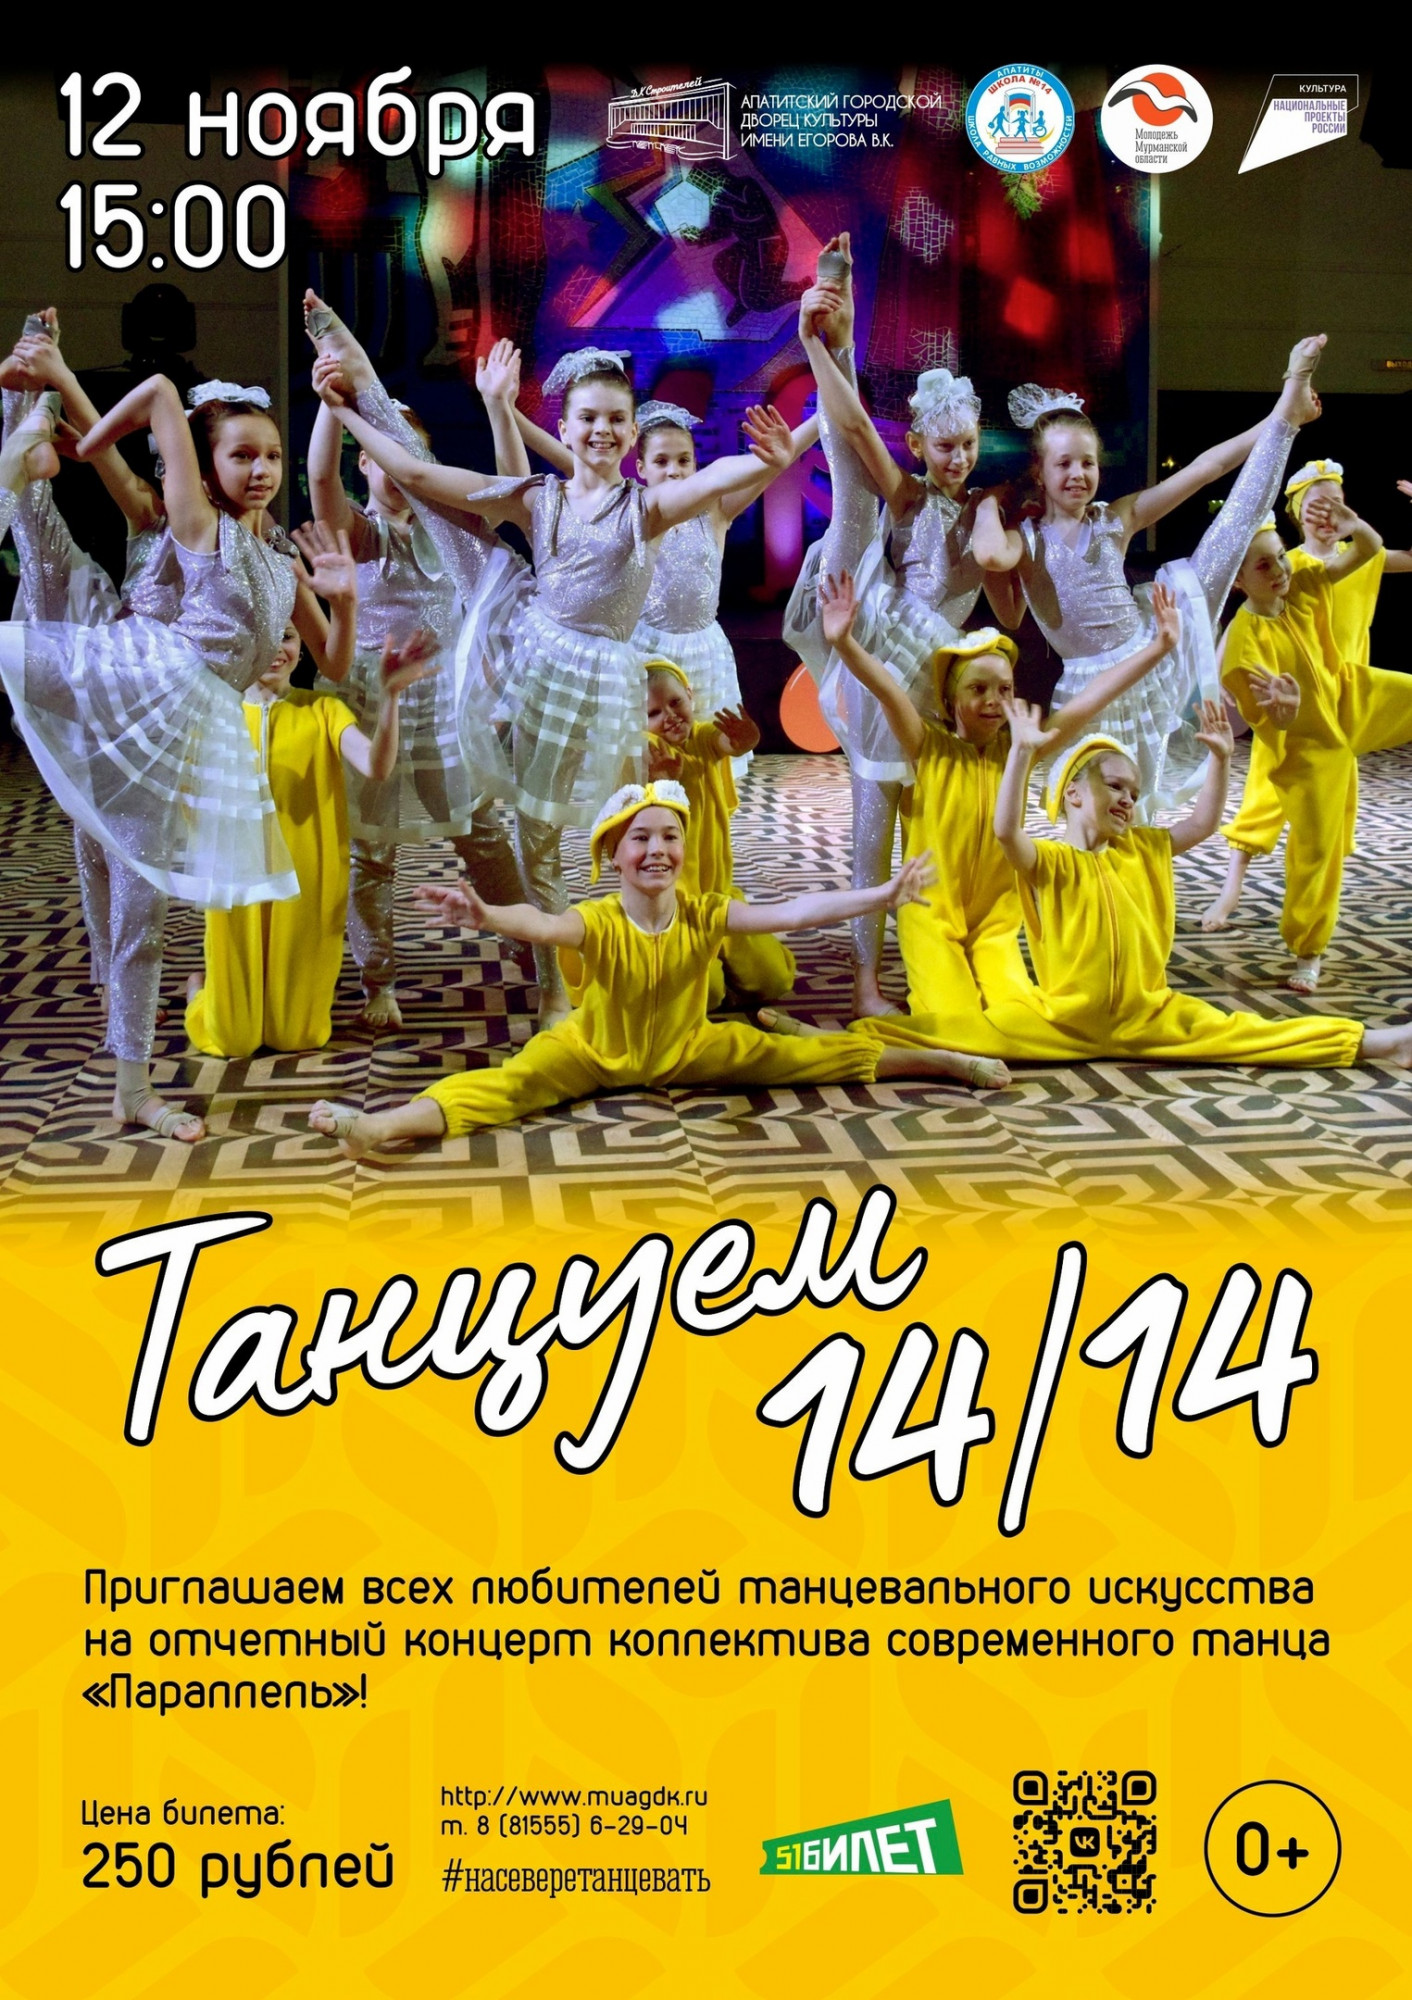 В Апатитах состоится отчетный концерт «Танцуем 14/14коллектива современного танца «Параллель»